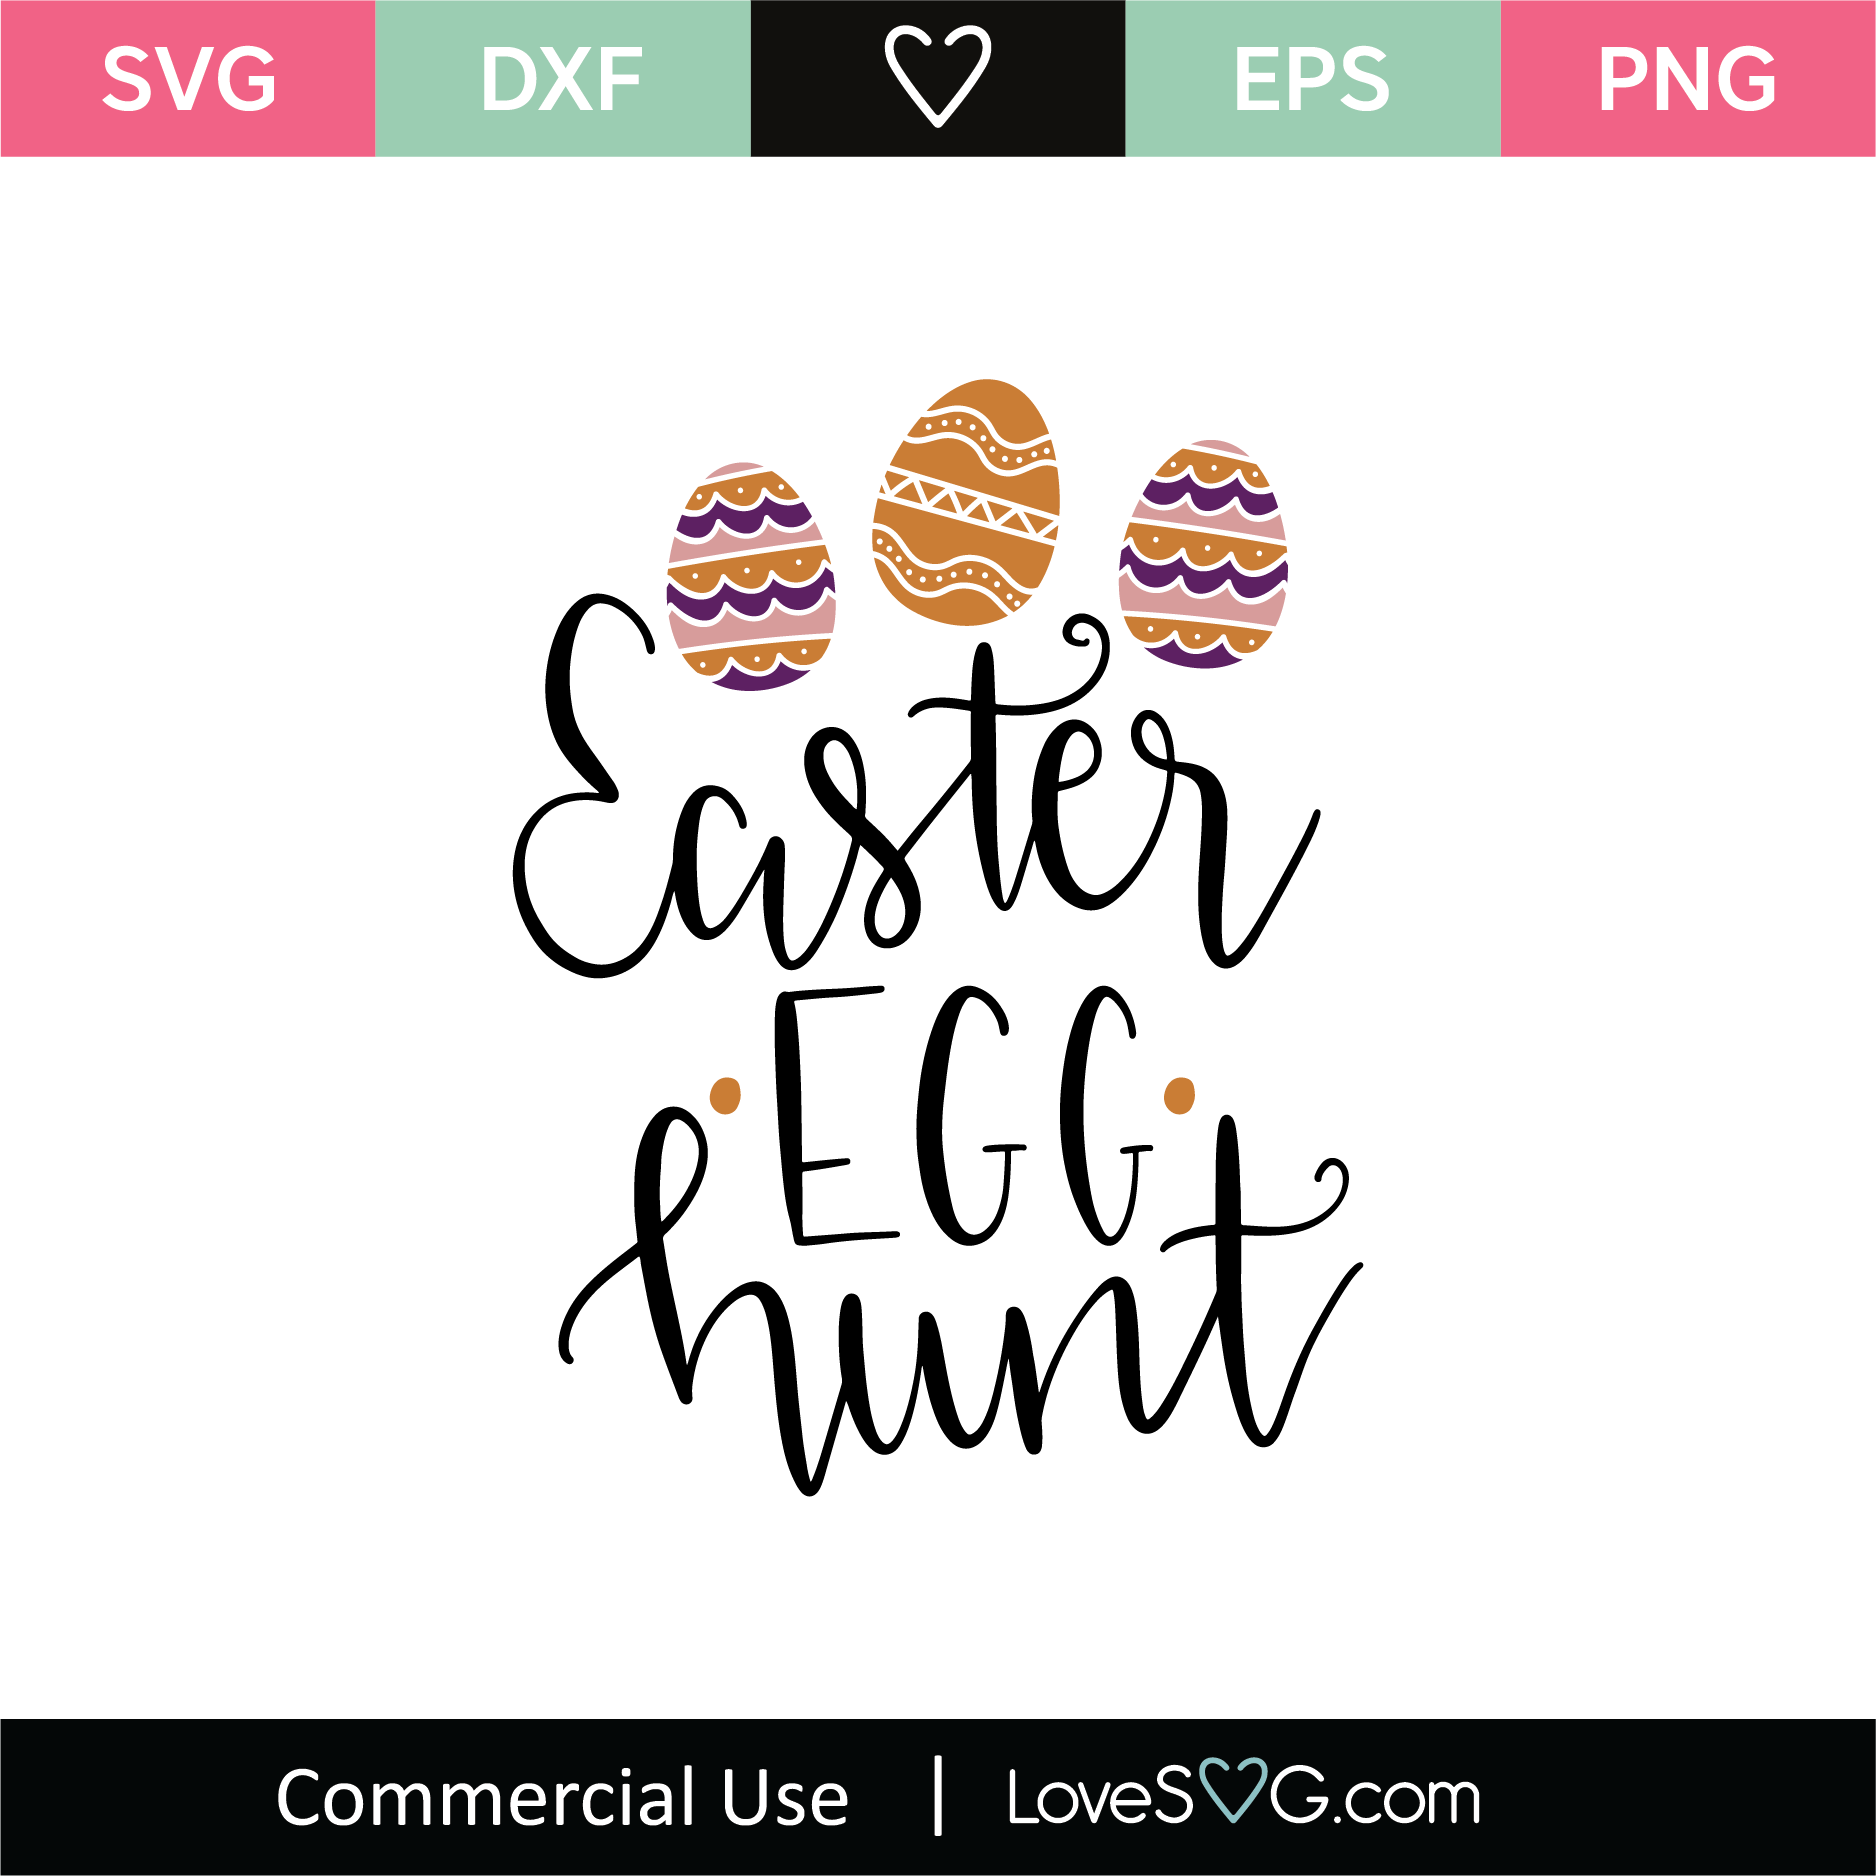 Easter Egg Hunt SVG Cut File - Lovesvg.com